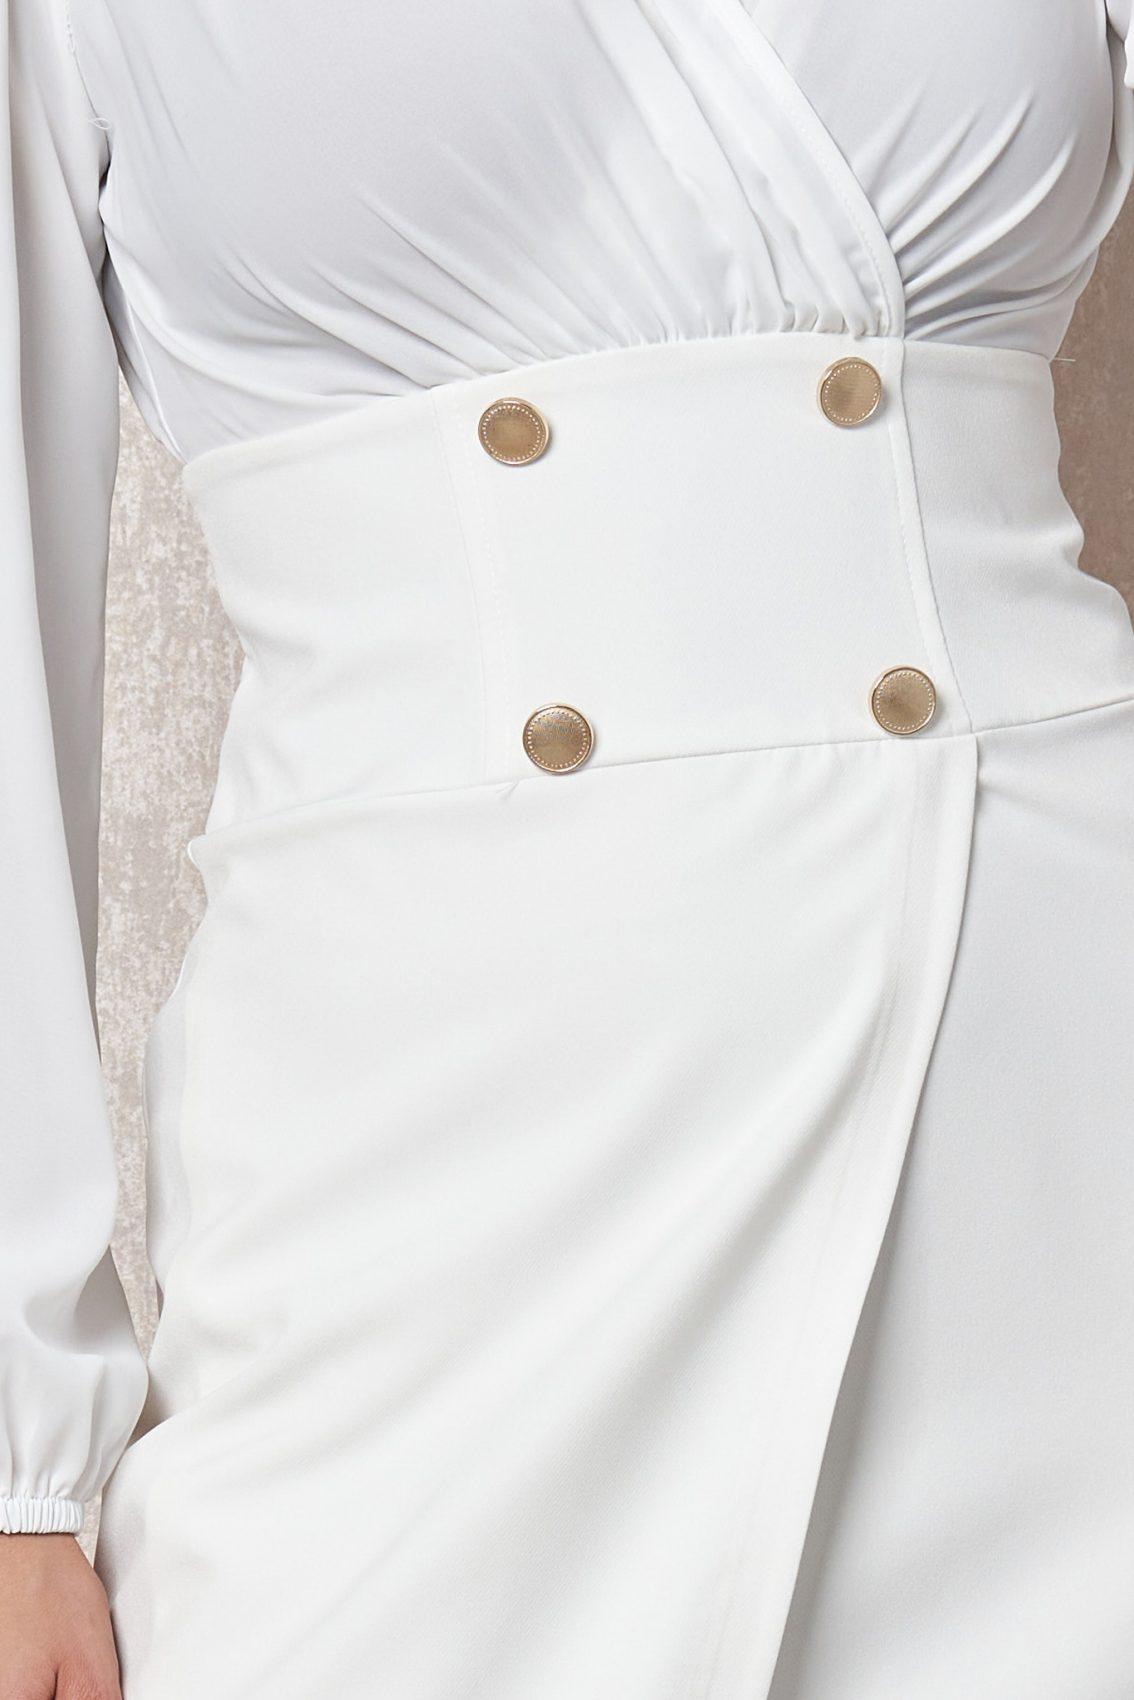 Λευκό Βραδινό Μακρυμάνικο Κρουαζέ Φόρεμα Kalia T2017 3